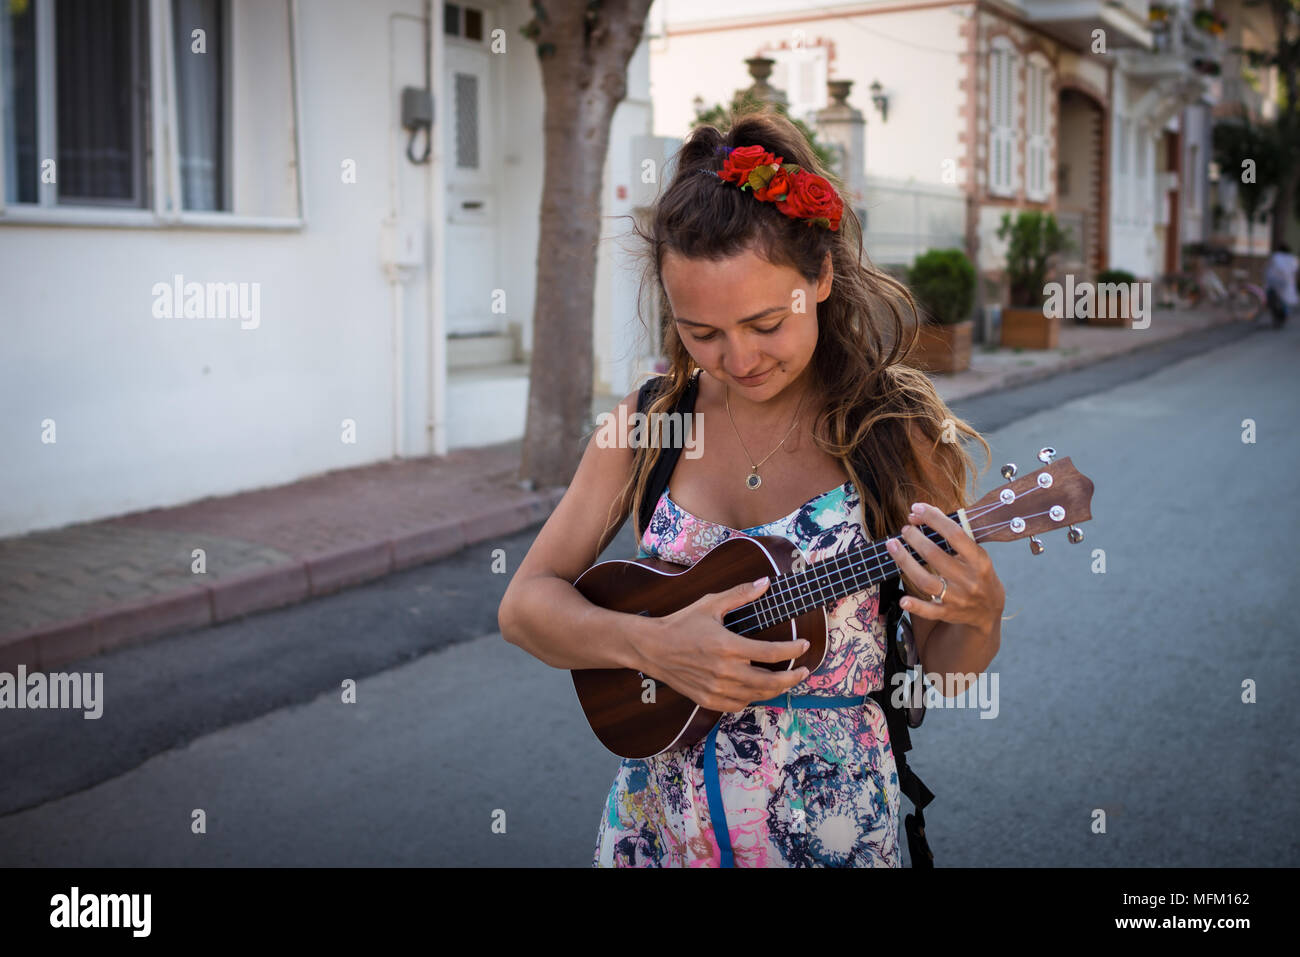 Lächelnde Frau mit Rosen in Frisur hält in den Händen Musikinstrument. Hübsches Mädchen geht auf der Straße und spielt auf der Ukulele. Stockfoto